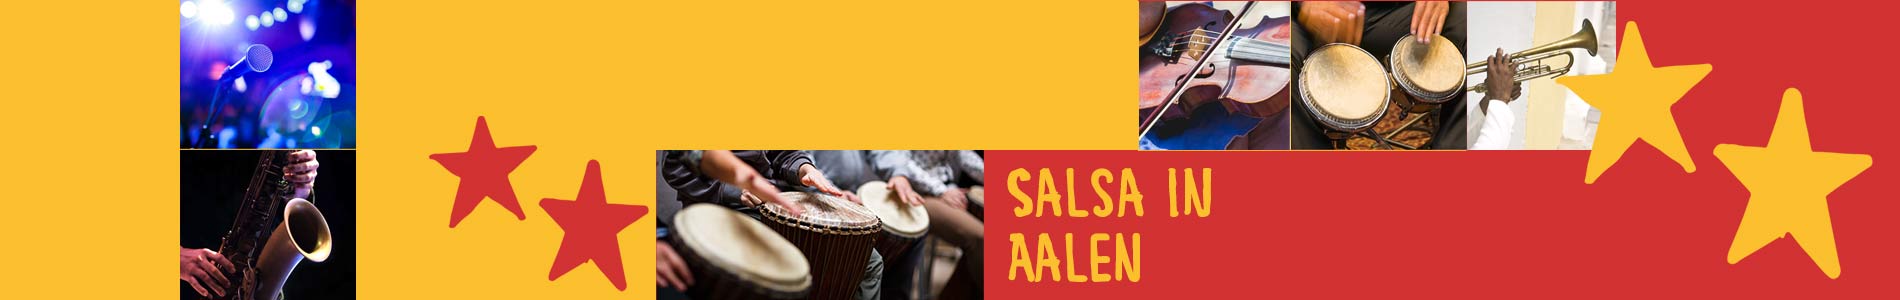 Salsa in Aalen – Salsa lernen und tanzen, Tanzkurse, Partys, Veranstaltungen